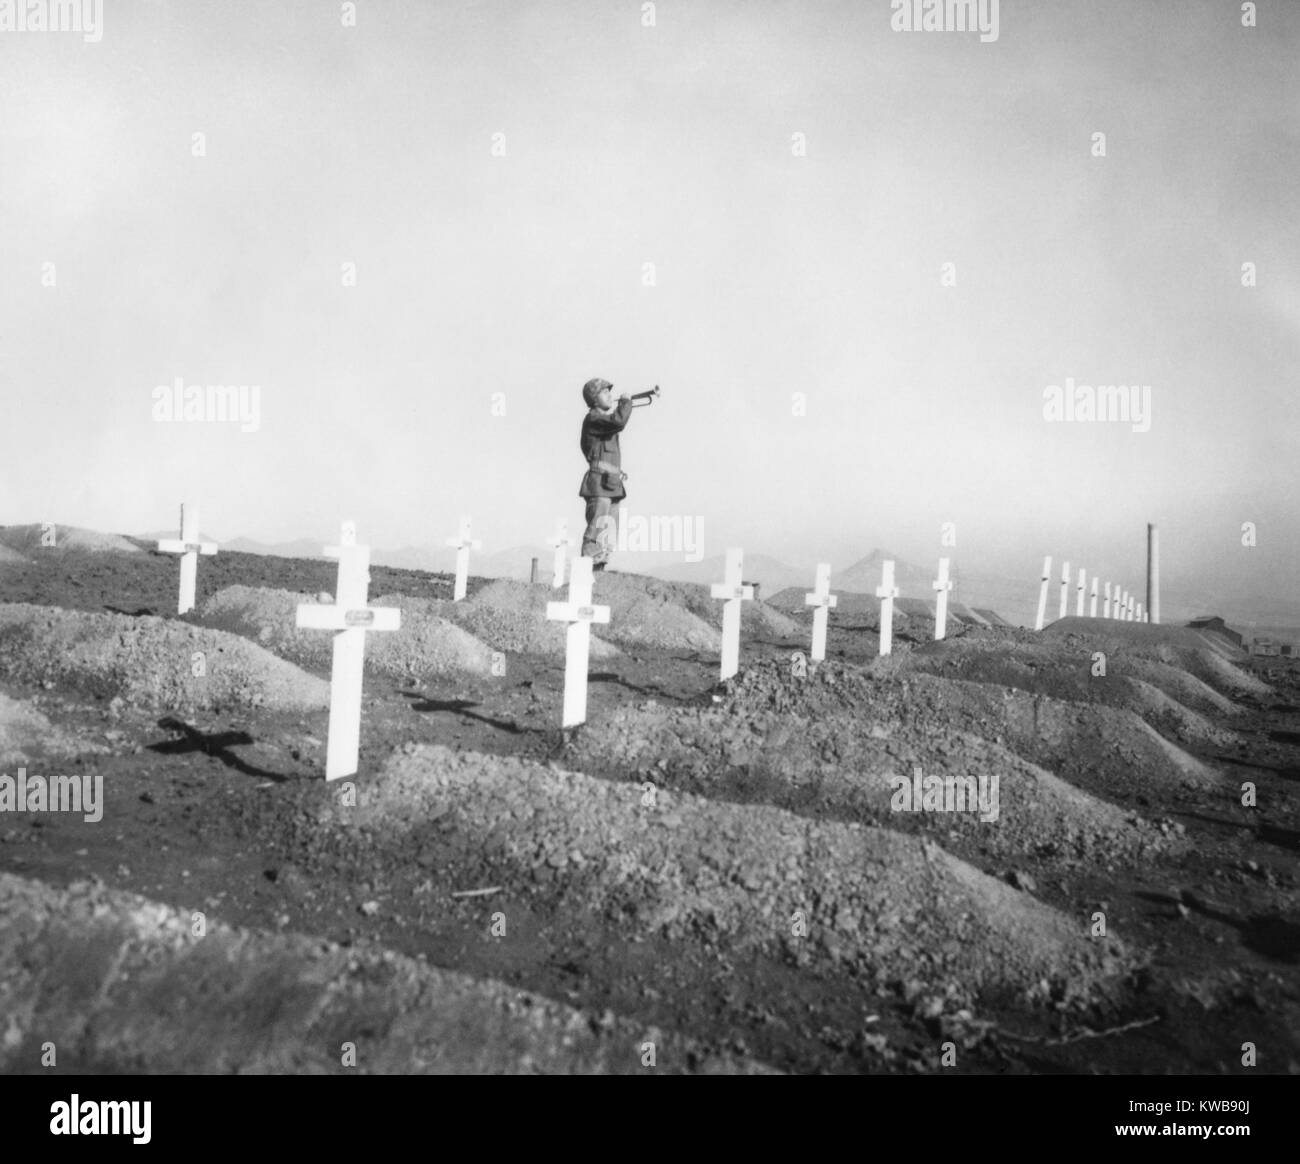 U.S. Marine joue 'pre' sur les tombes de fallen Leathernecks lors des services commémoratifs. La Première Division de marines morts furent apportés d'du réservoir de Chosin d'être enterré dans le cimetière de Hungnam, Corée. 13 déc., 1950. Guerre de Corée, 1950-1953. (BSLOC   2014 11 207) Banque D'Images